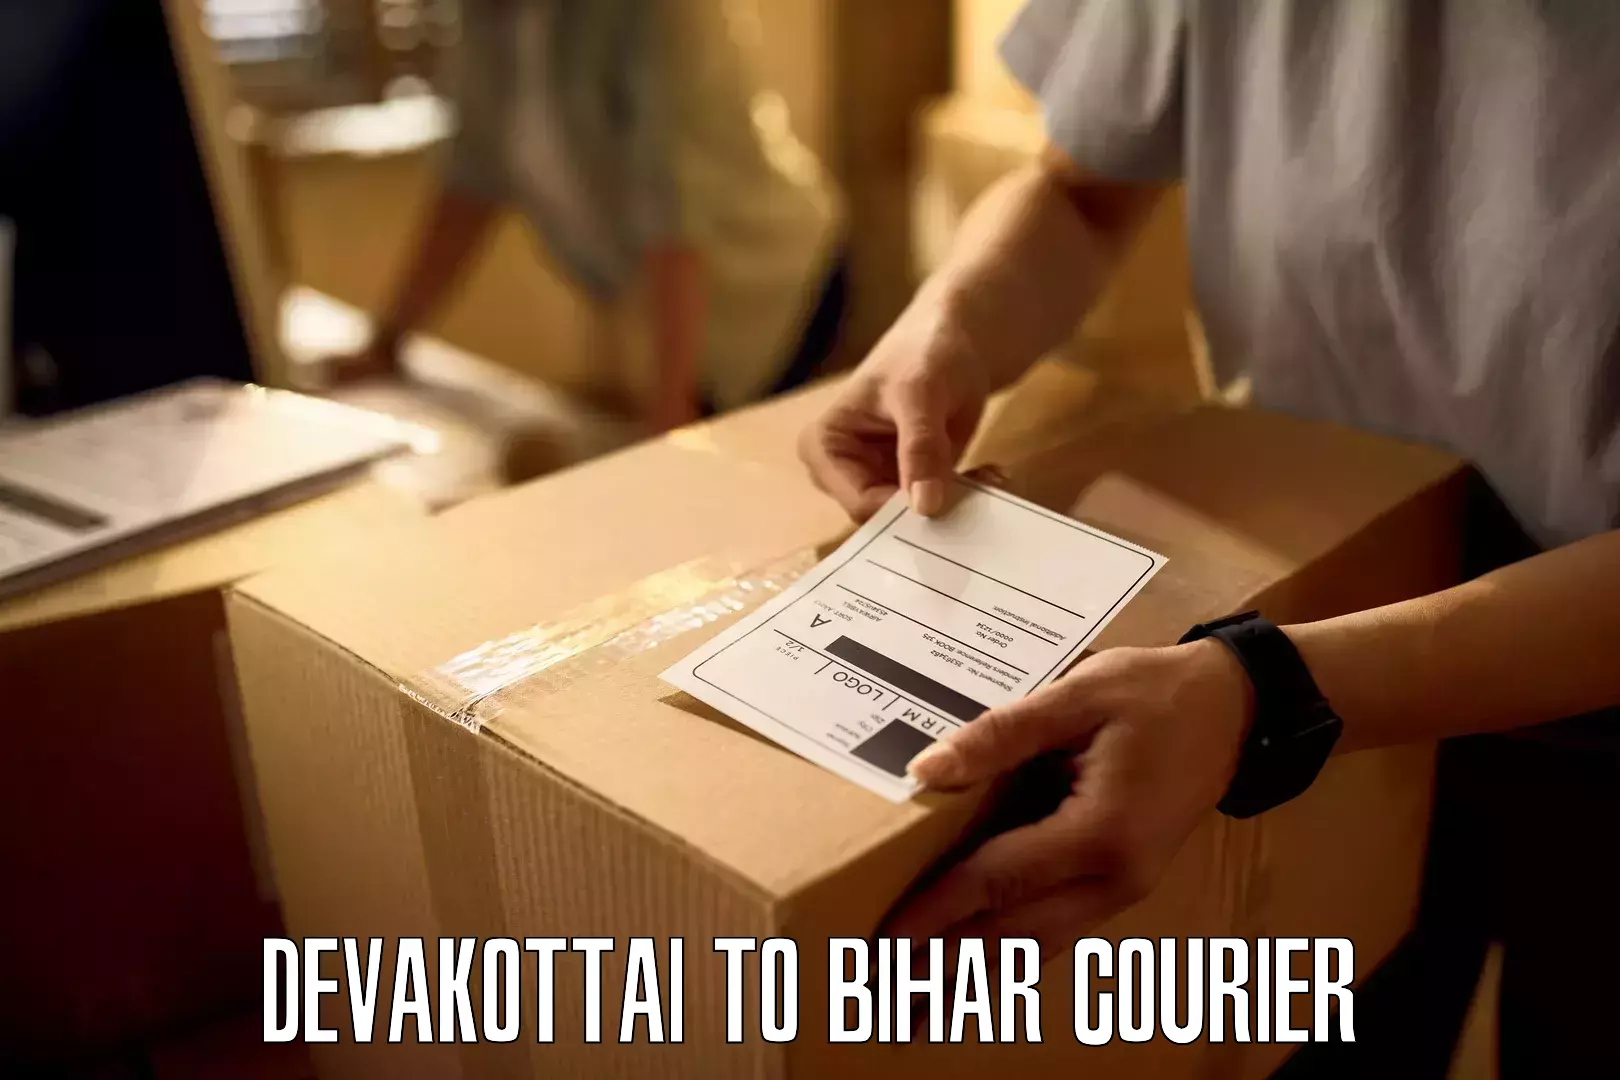 Nationwide shipping services Devakottai to Bihar